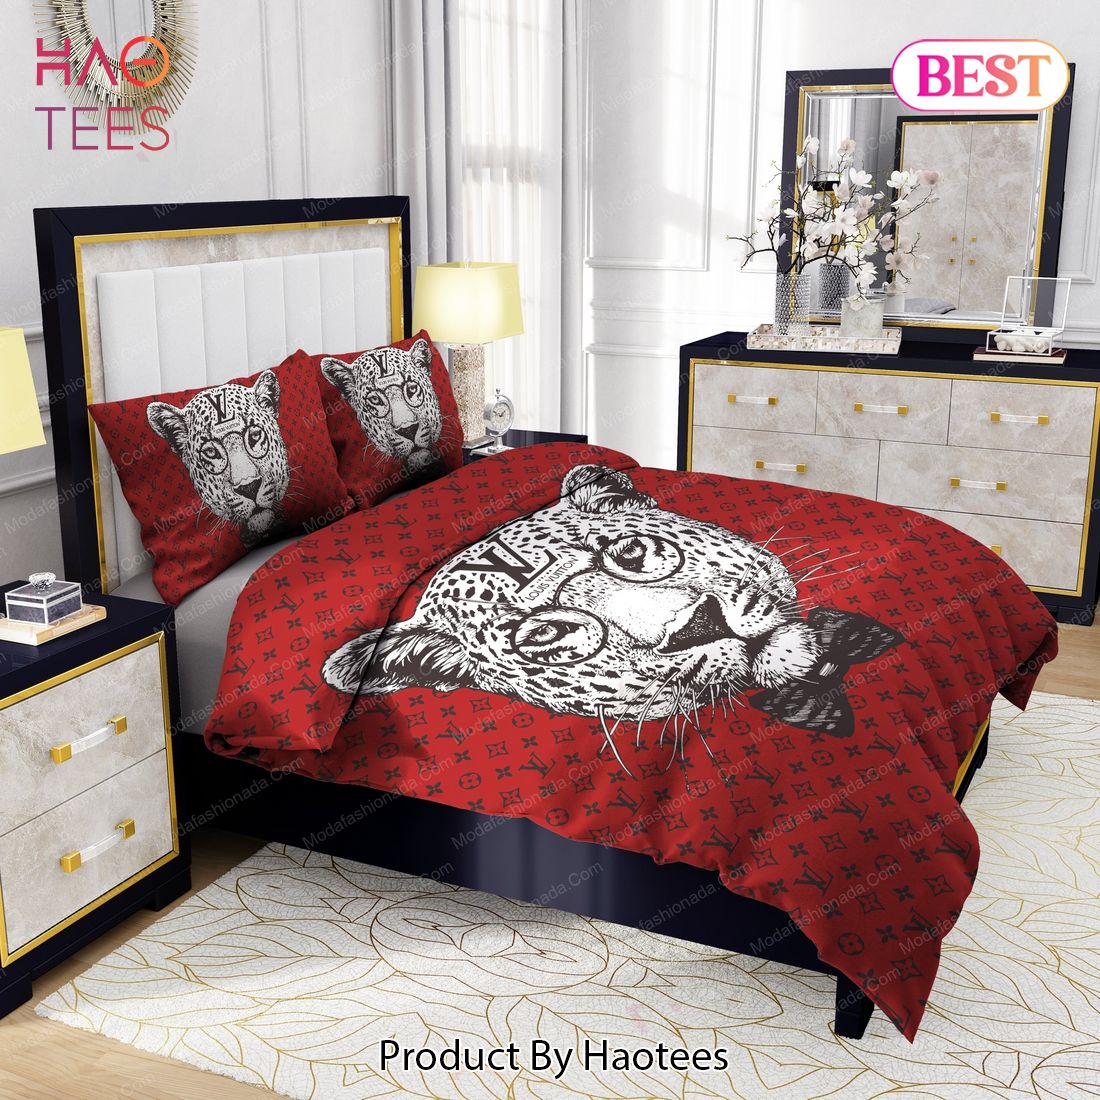 Leopard Head Louis Vuitton Bedding Sets Bed Sets, Bedroom Sets, Comforter Sets, Duvet Cover, Bedspread